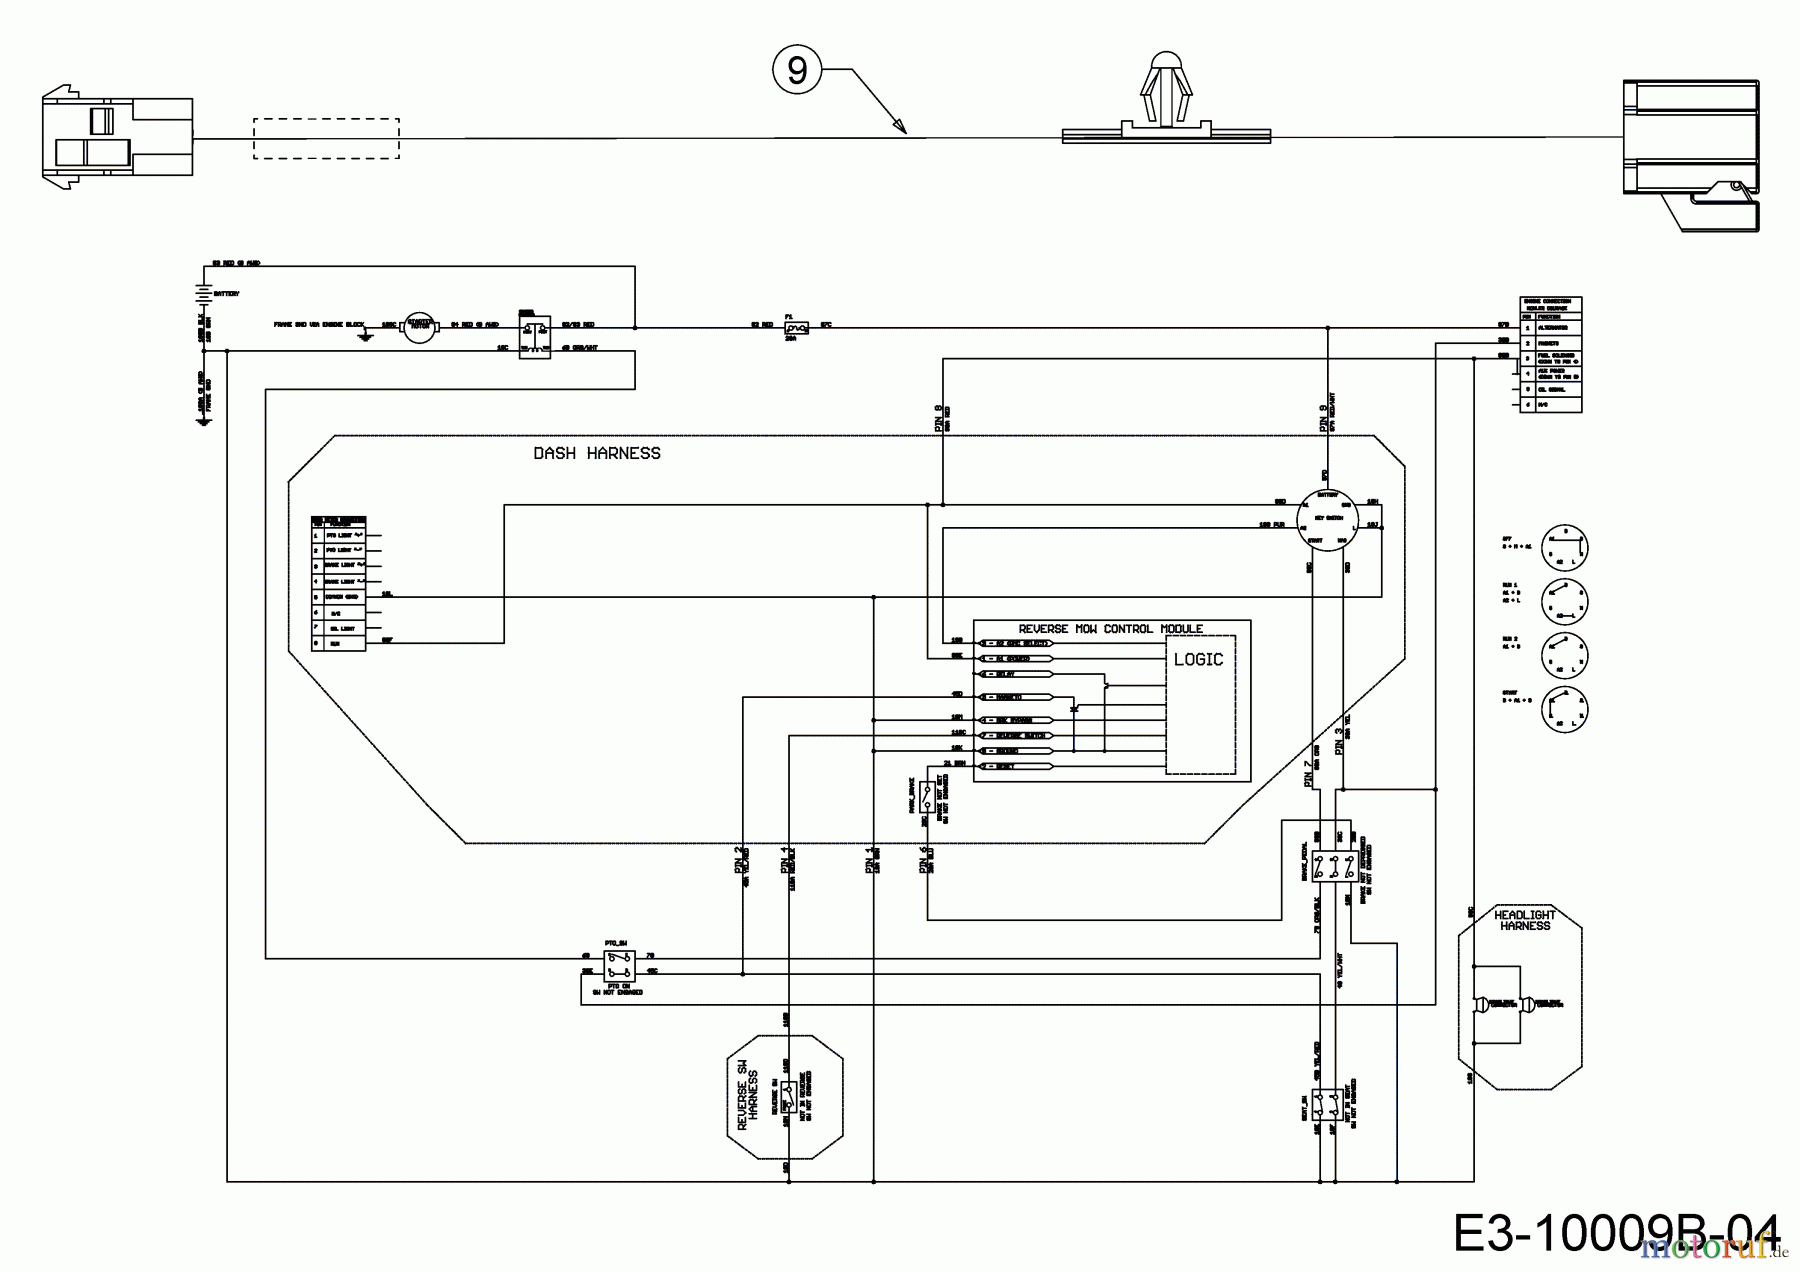  Cub Cadet Lawn tractors XT1 OS107 13A8A1CS603  (2019) Wiring diagram reverse